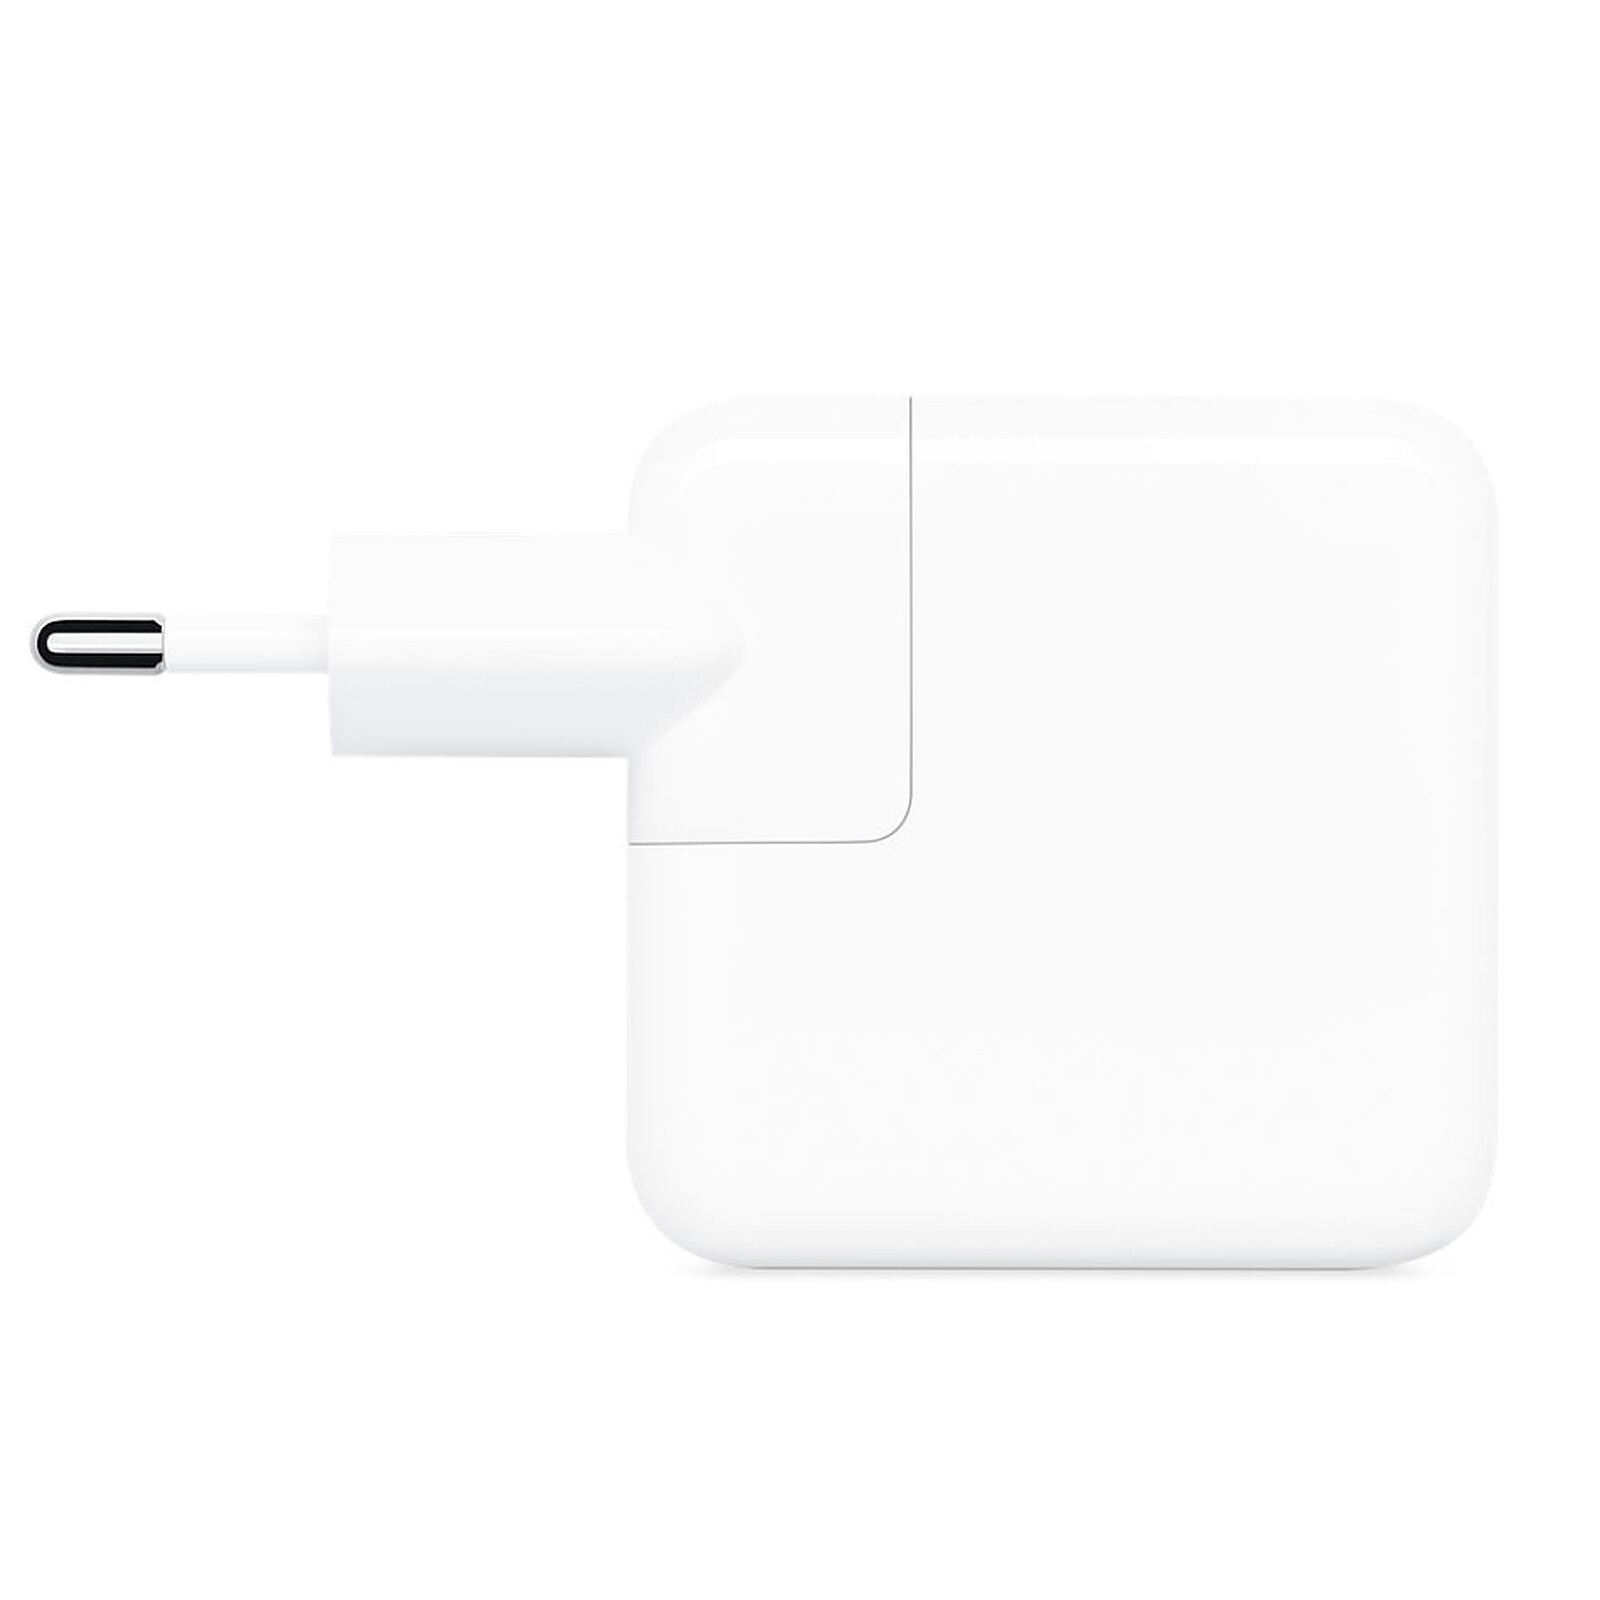 Cable tipo C y enchufe para carga de iphone y ipad.